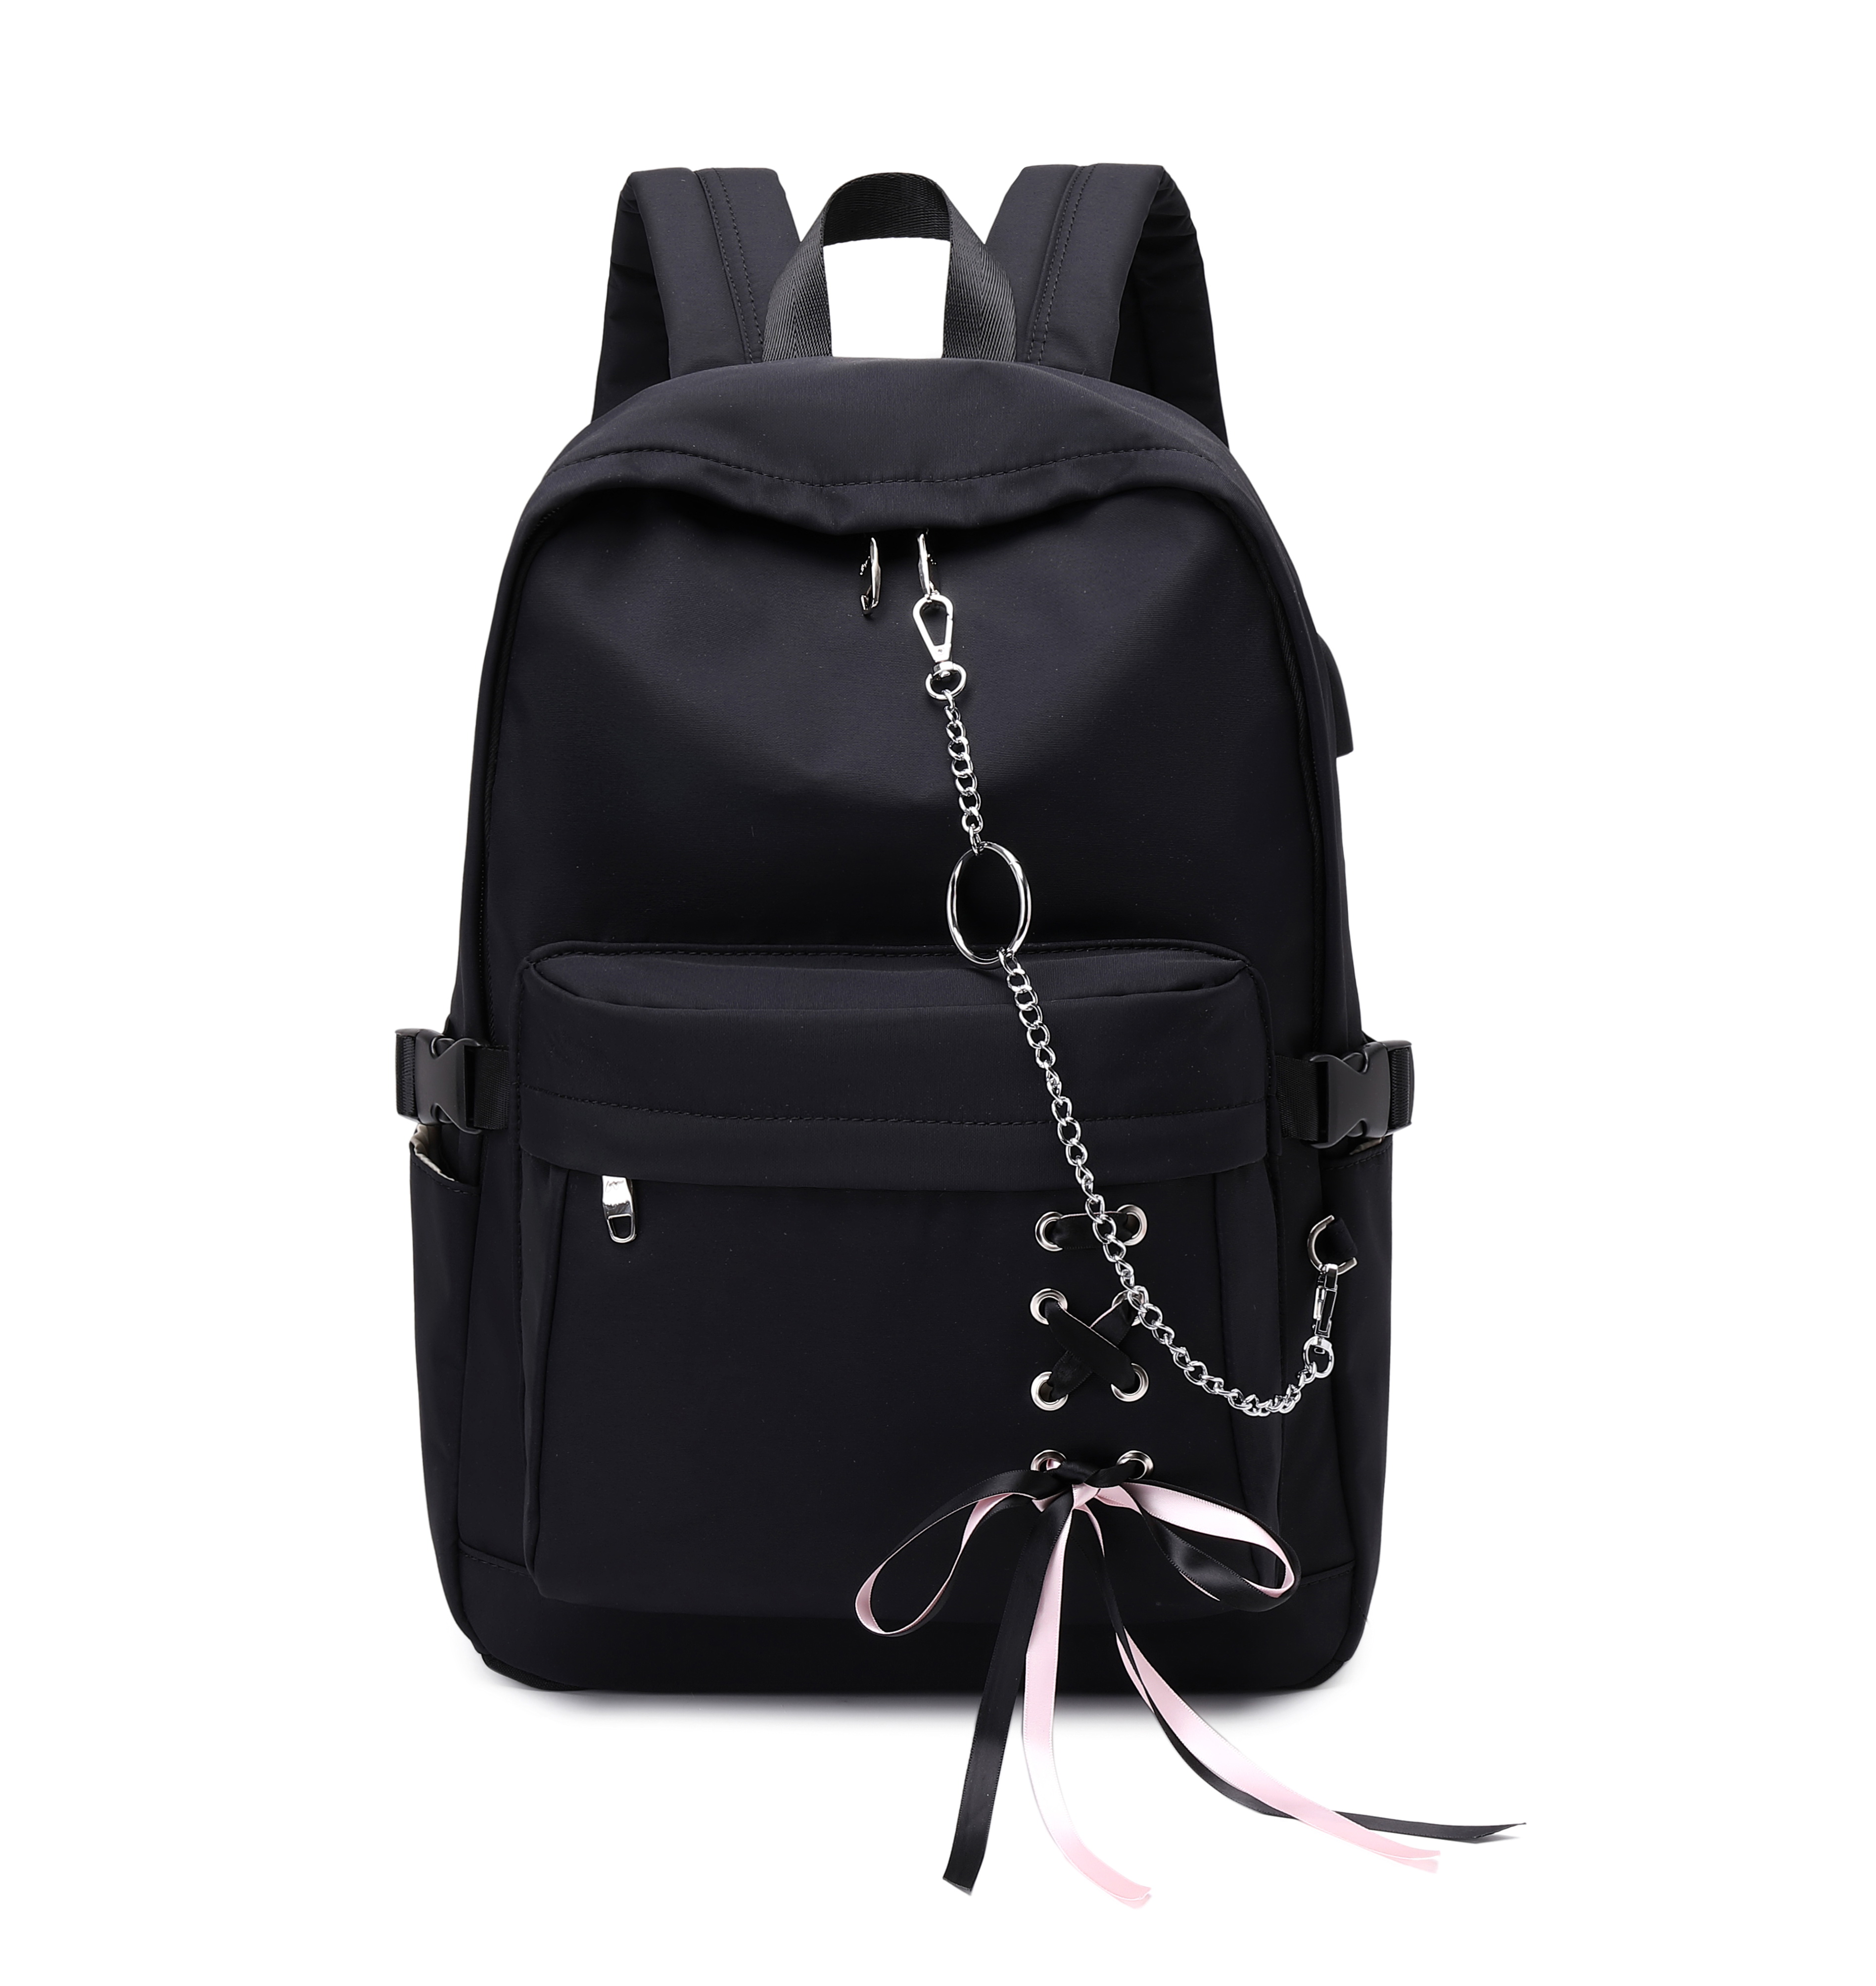 JOYMOZE Waterproof Fashion Roomy Backpack for Women